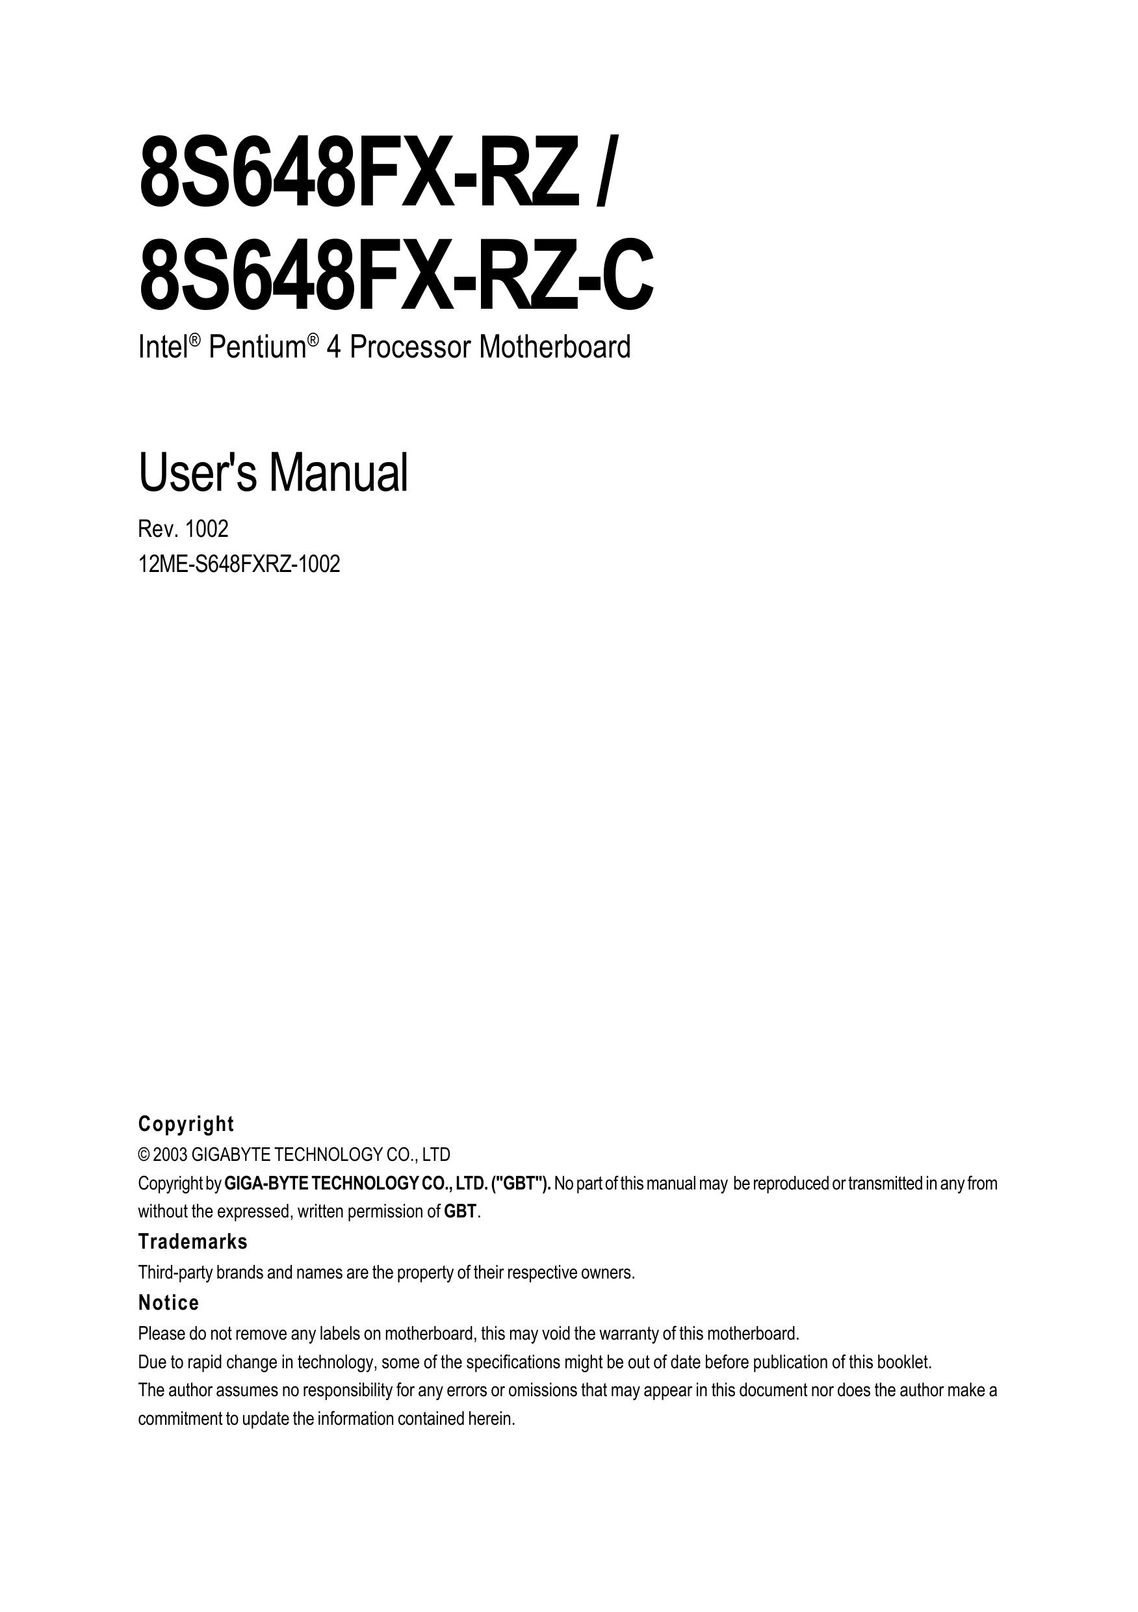 Gigabyte 8S648FX-RZ-C Computer Hardware User Manual